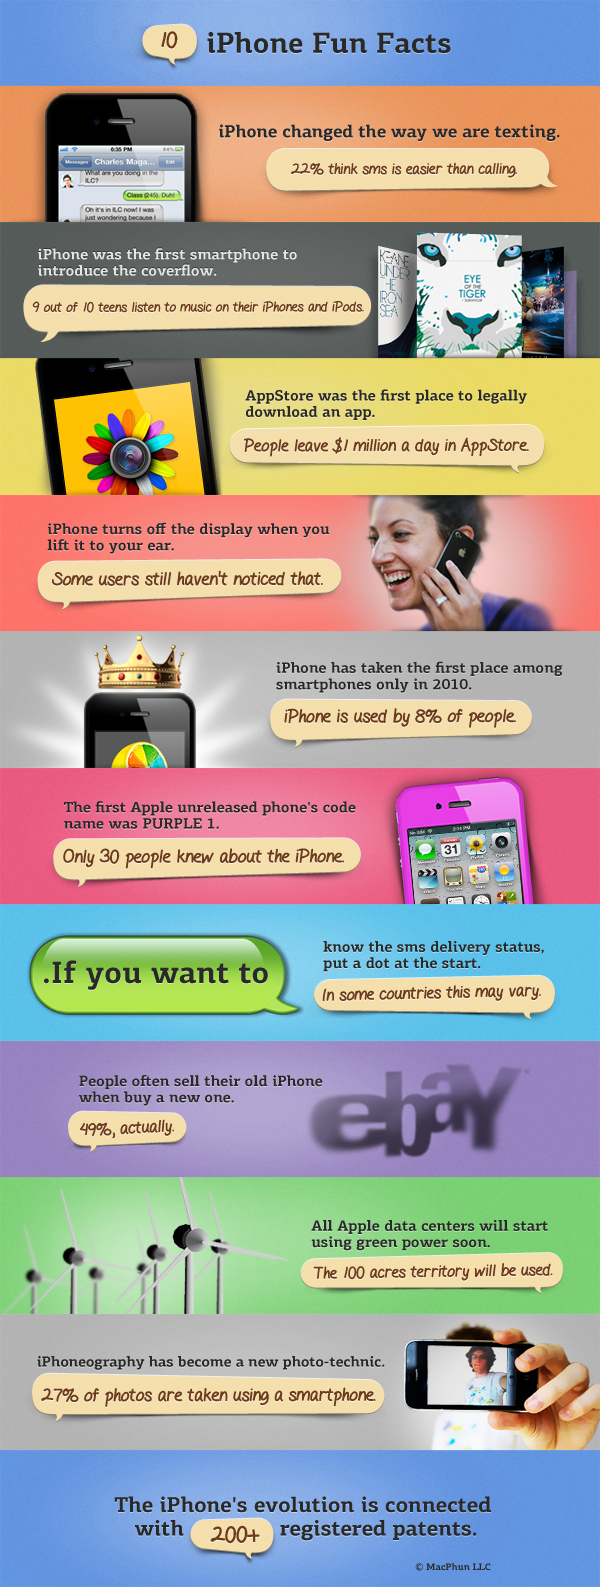 10 iPhone Fun Facts